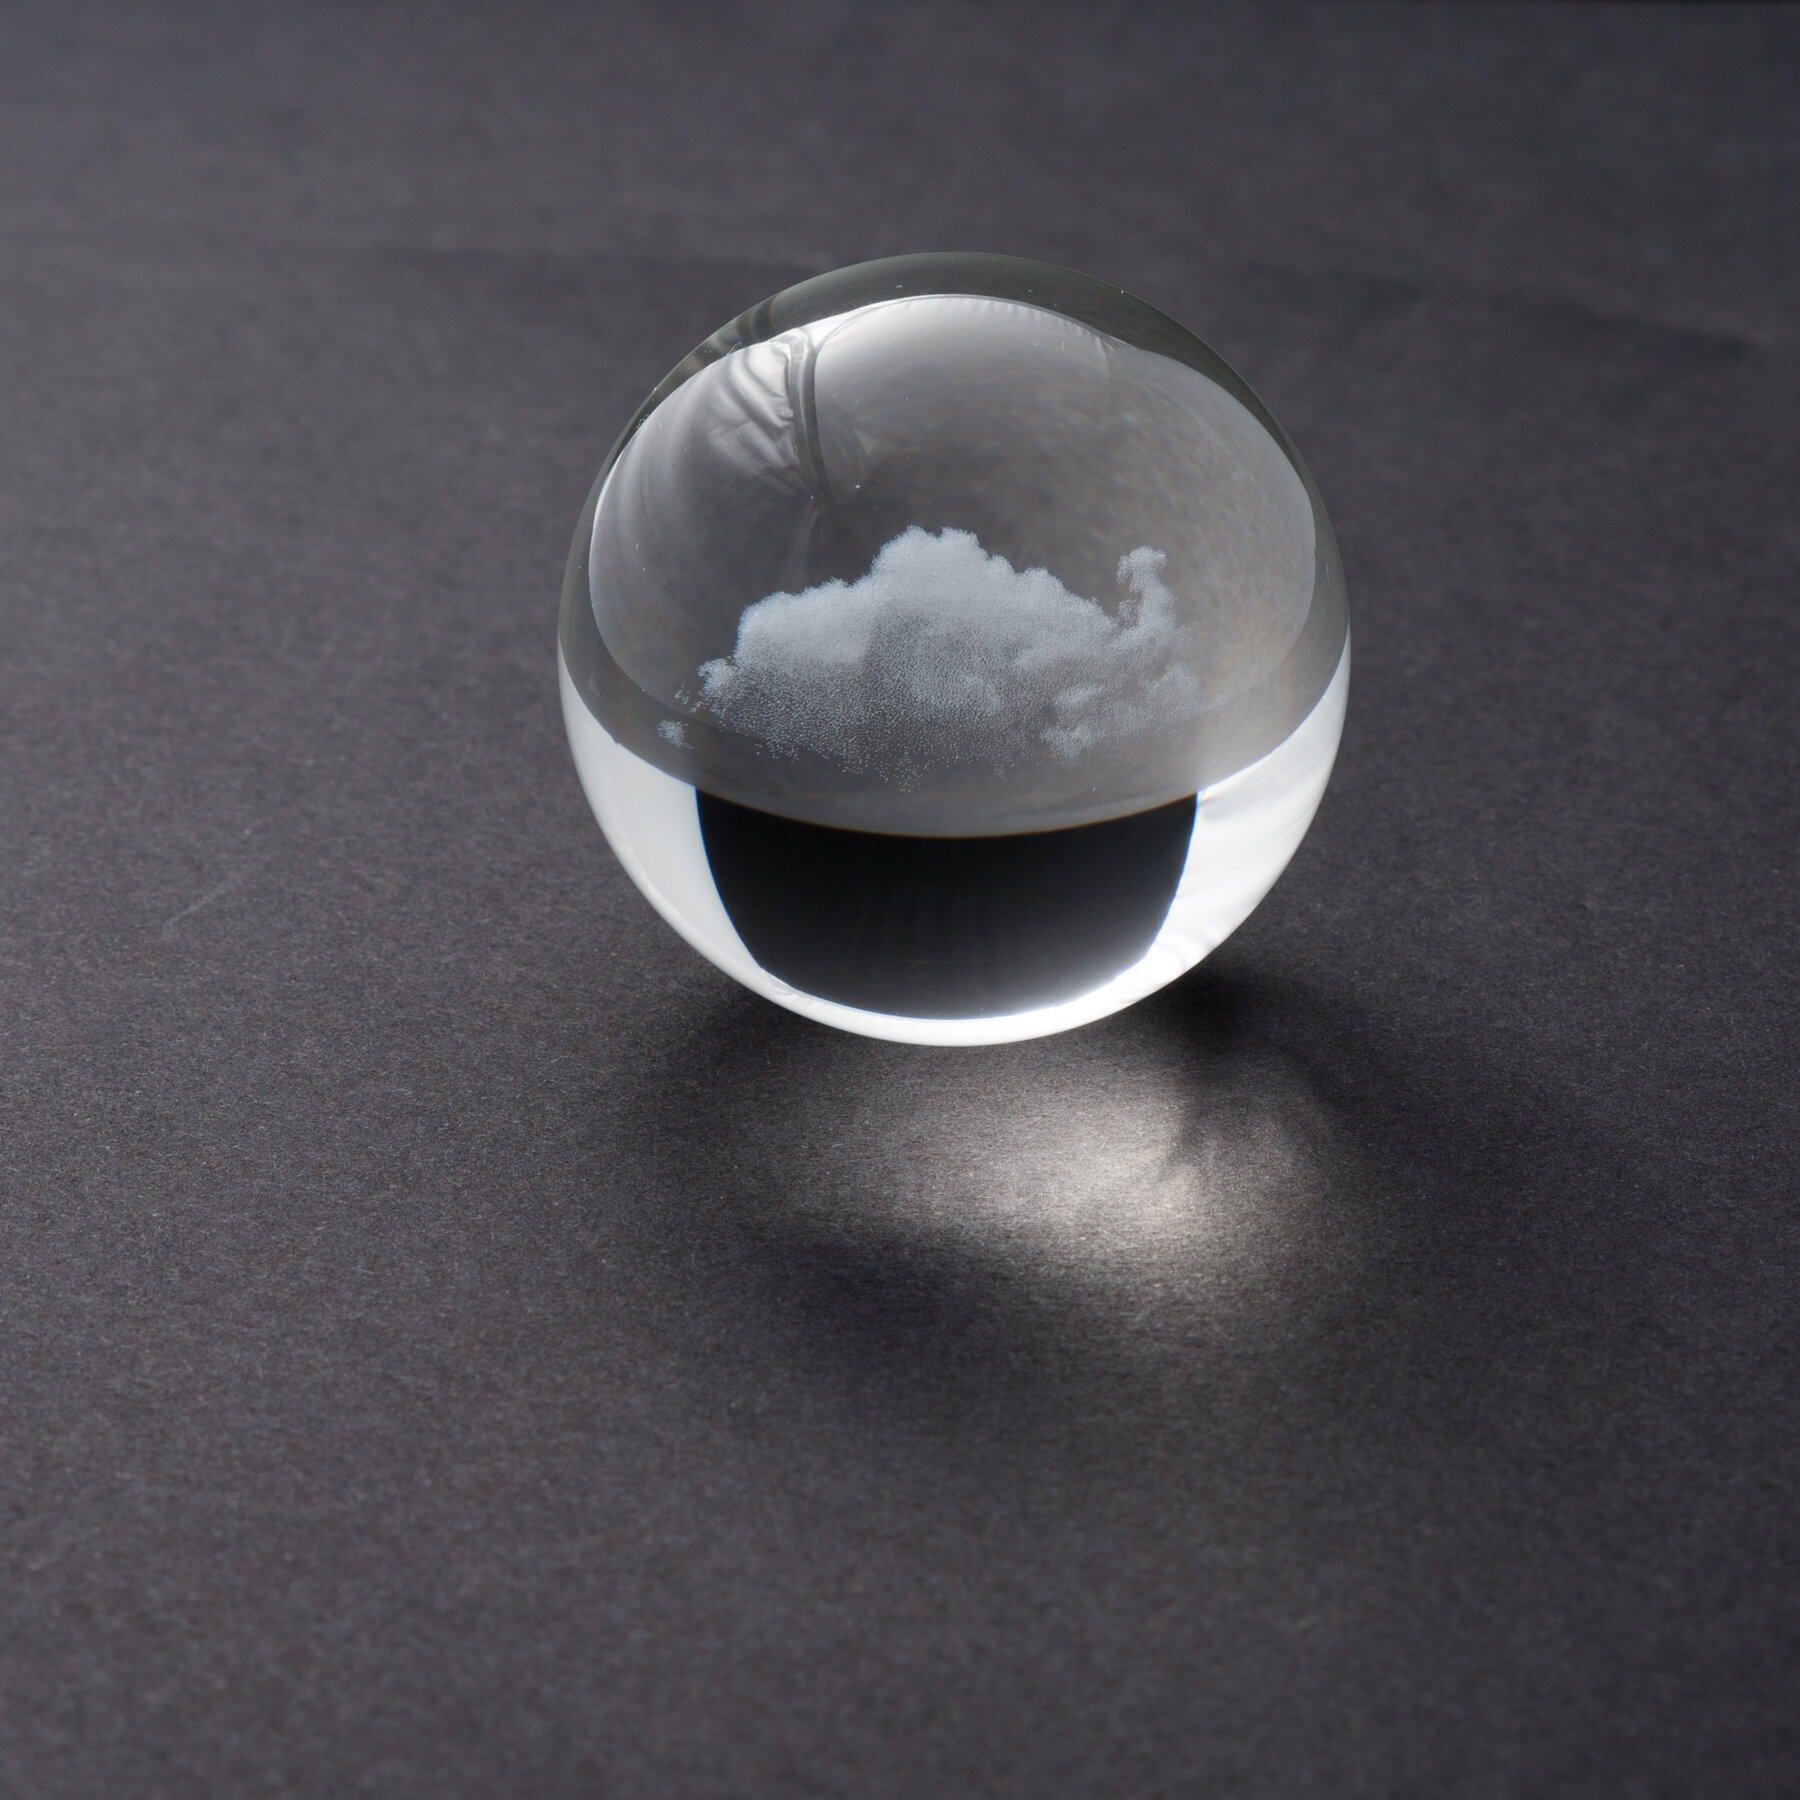 cloud_sphere_mini_1.75x1.75x1.75_inches_glass_2017_miya_ando_1.jpg